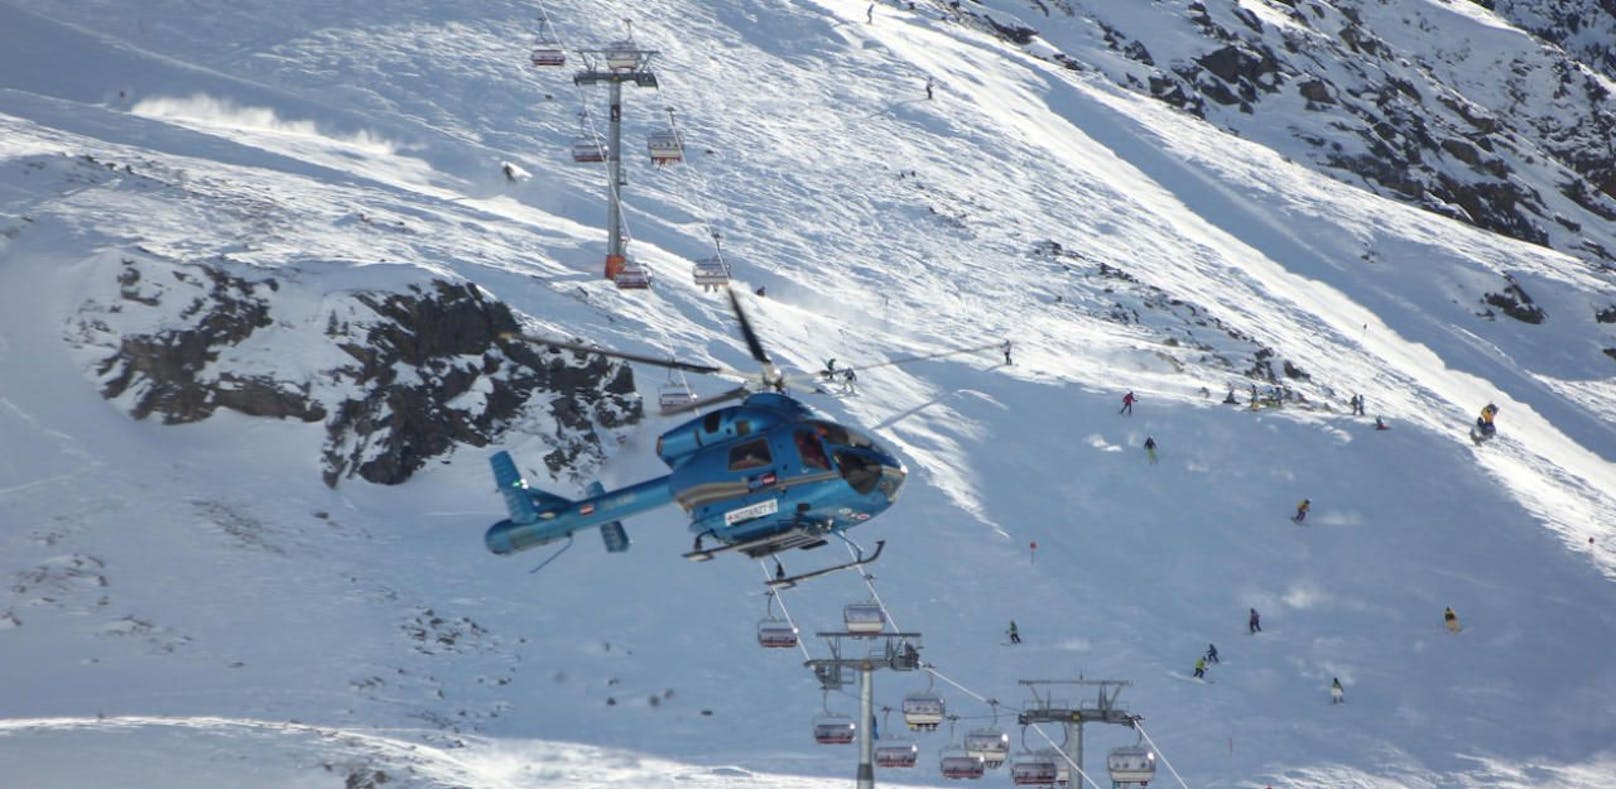 Snowboarder kollabiert bei Bergstation und stirbt